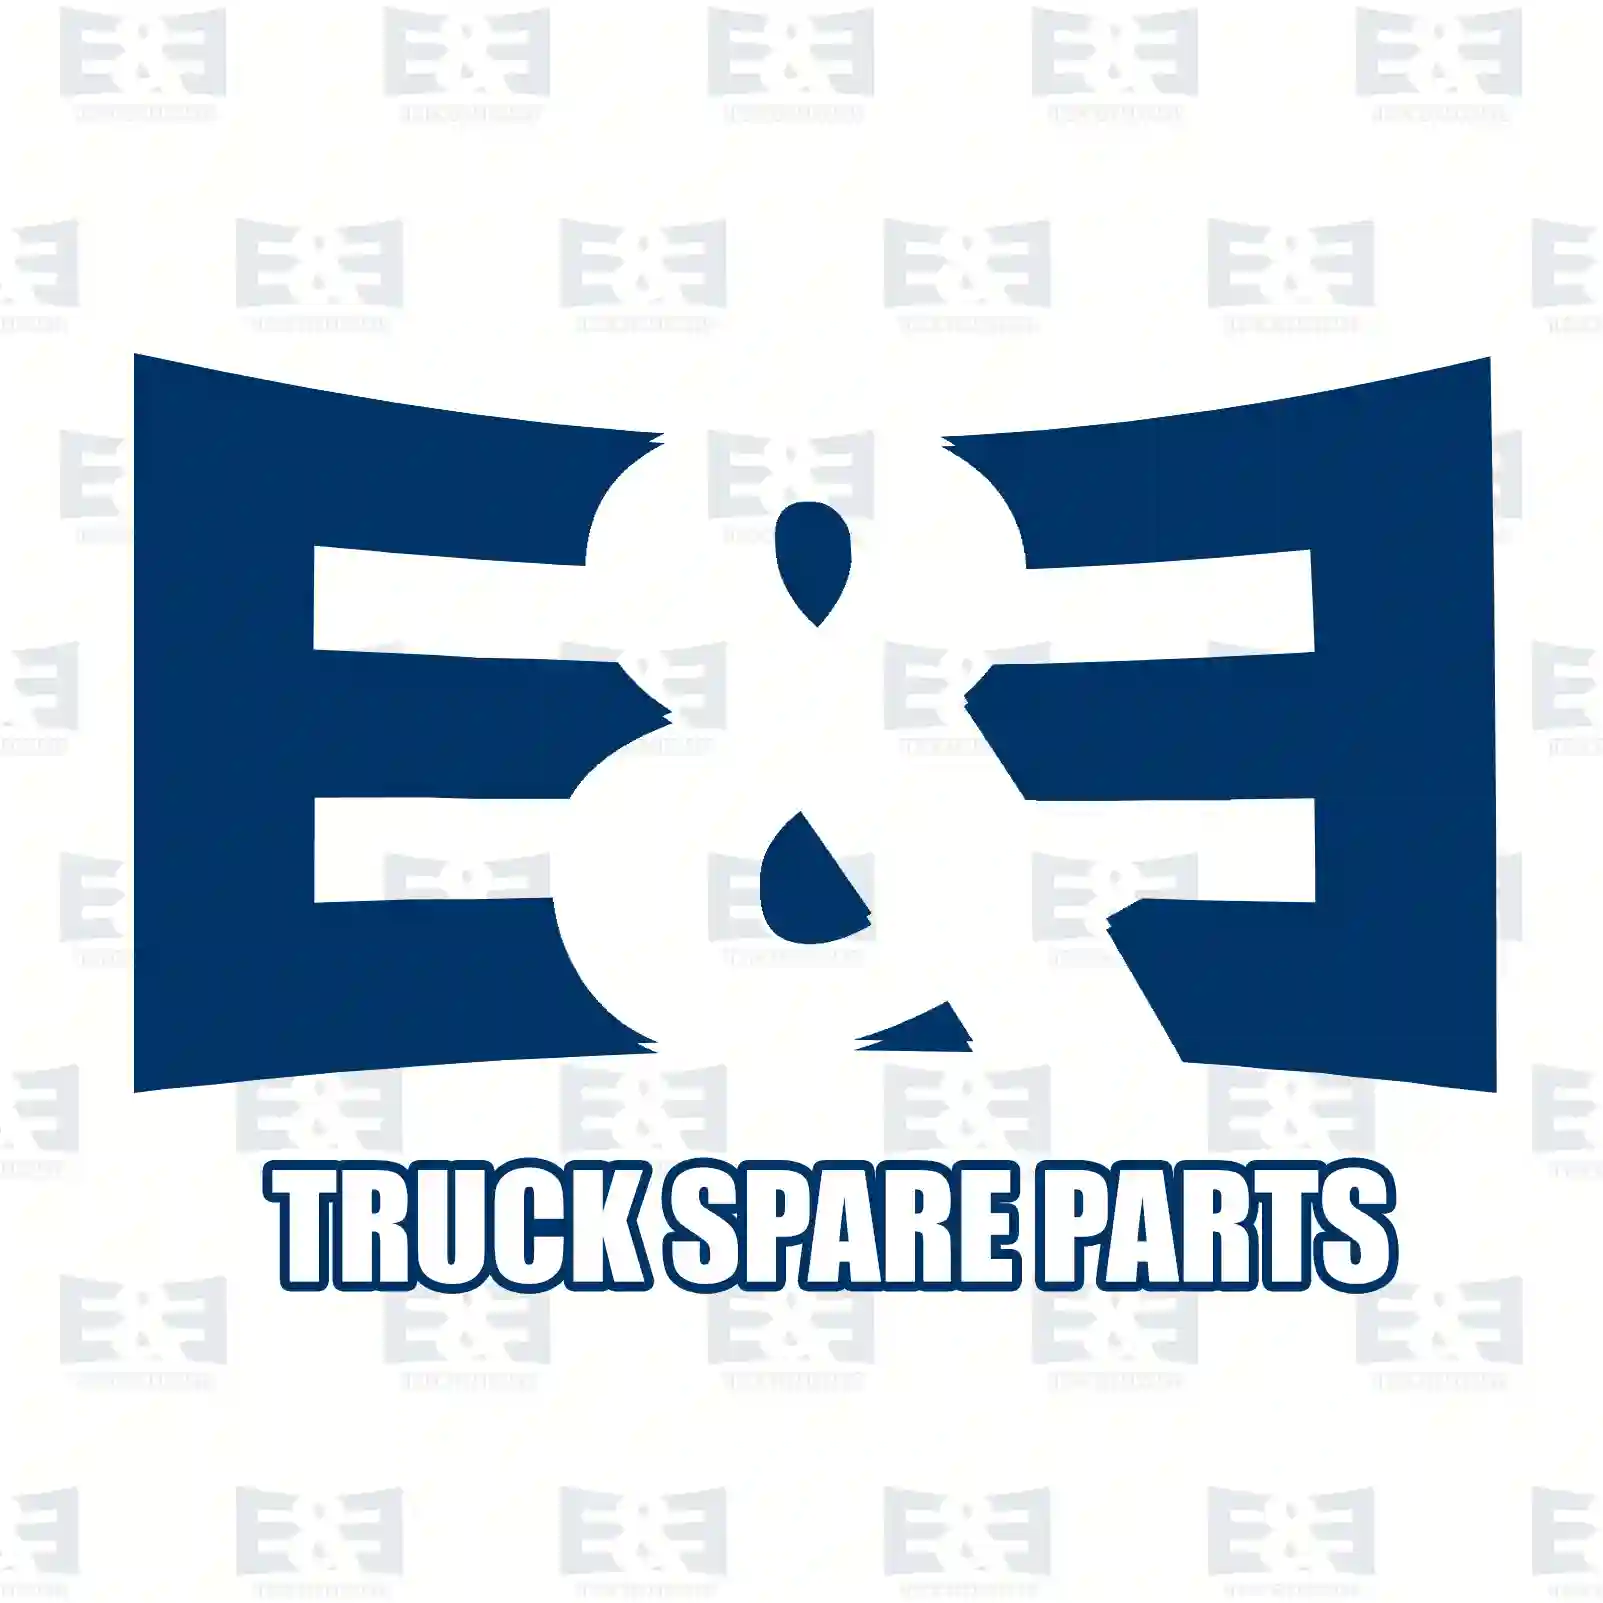 Fan clutch, 2E2201512, 51066300055, 51066300061, 51066300068, 51066309068 ||  2E2201512 E&E Truck Spare Parts | Truck Spare Parts, Auotomotive Spare Parts Fan clutch, 2E2201512, 51066300055, 51066300061, 51066300068, 51066309068 ||  2E2201512 E&E Truck Spare Parts | Truck Spare Parts, Auotomotive Spare Parts